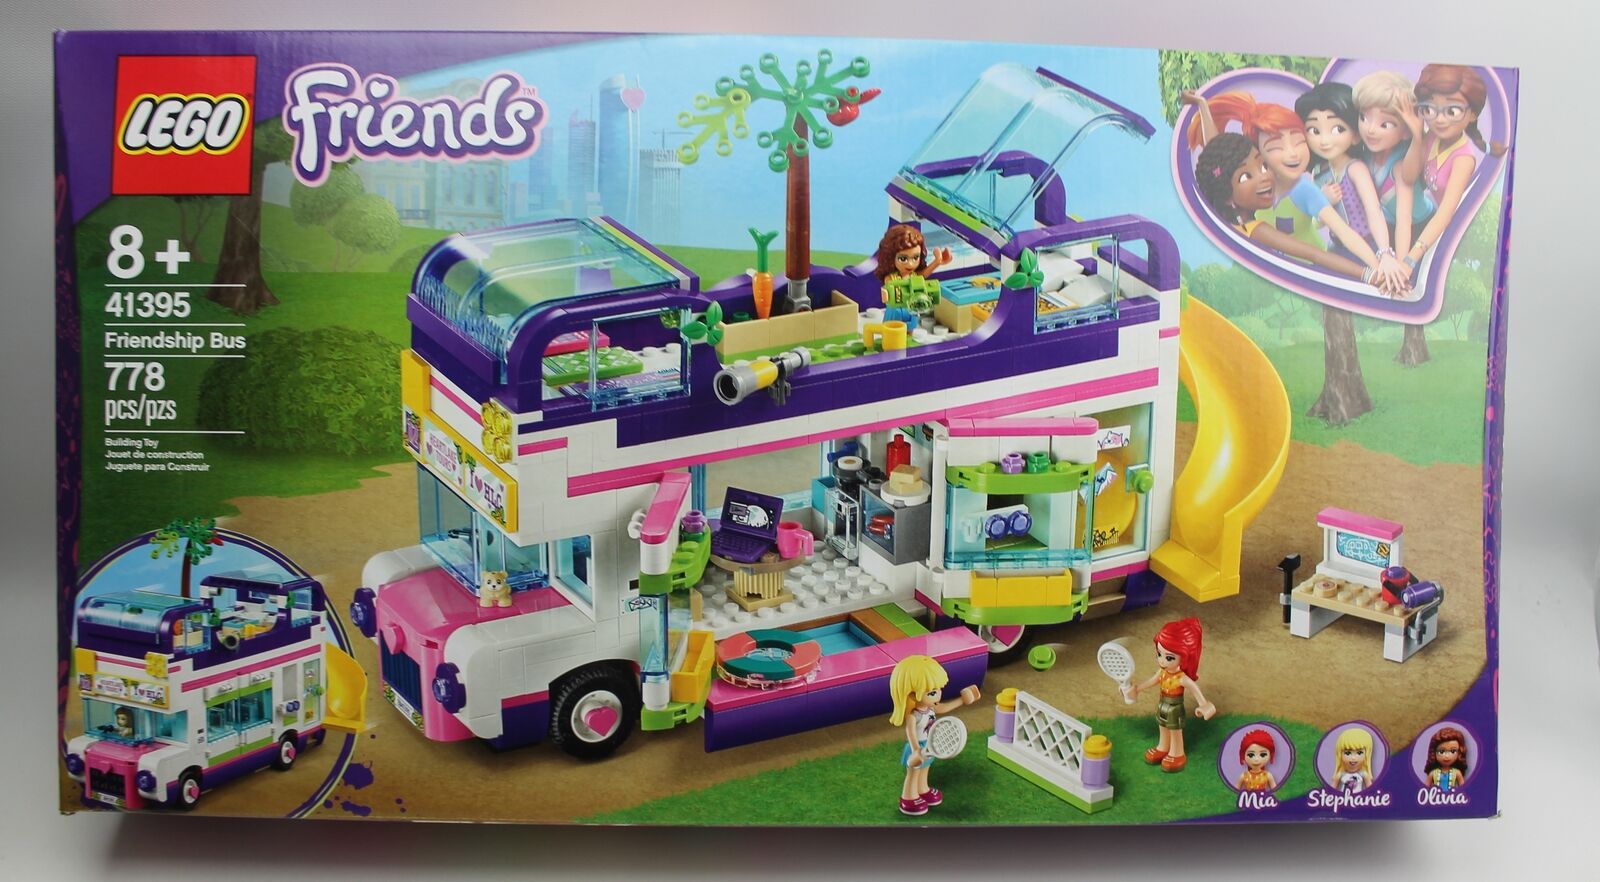 Lego Friends Friendship Bus Set 41395